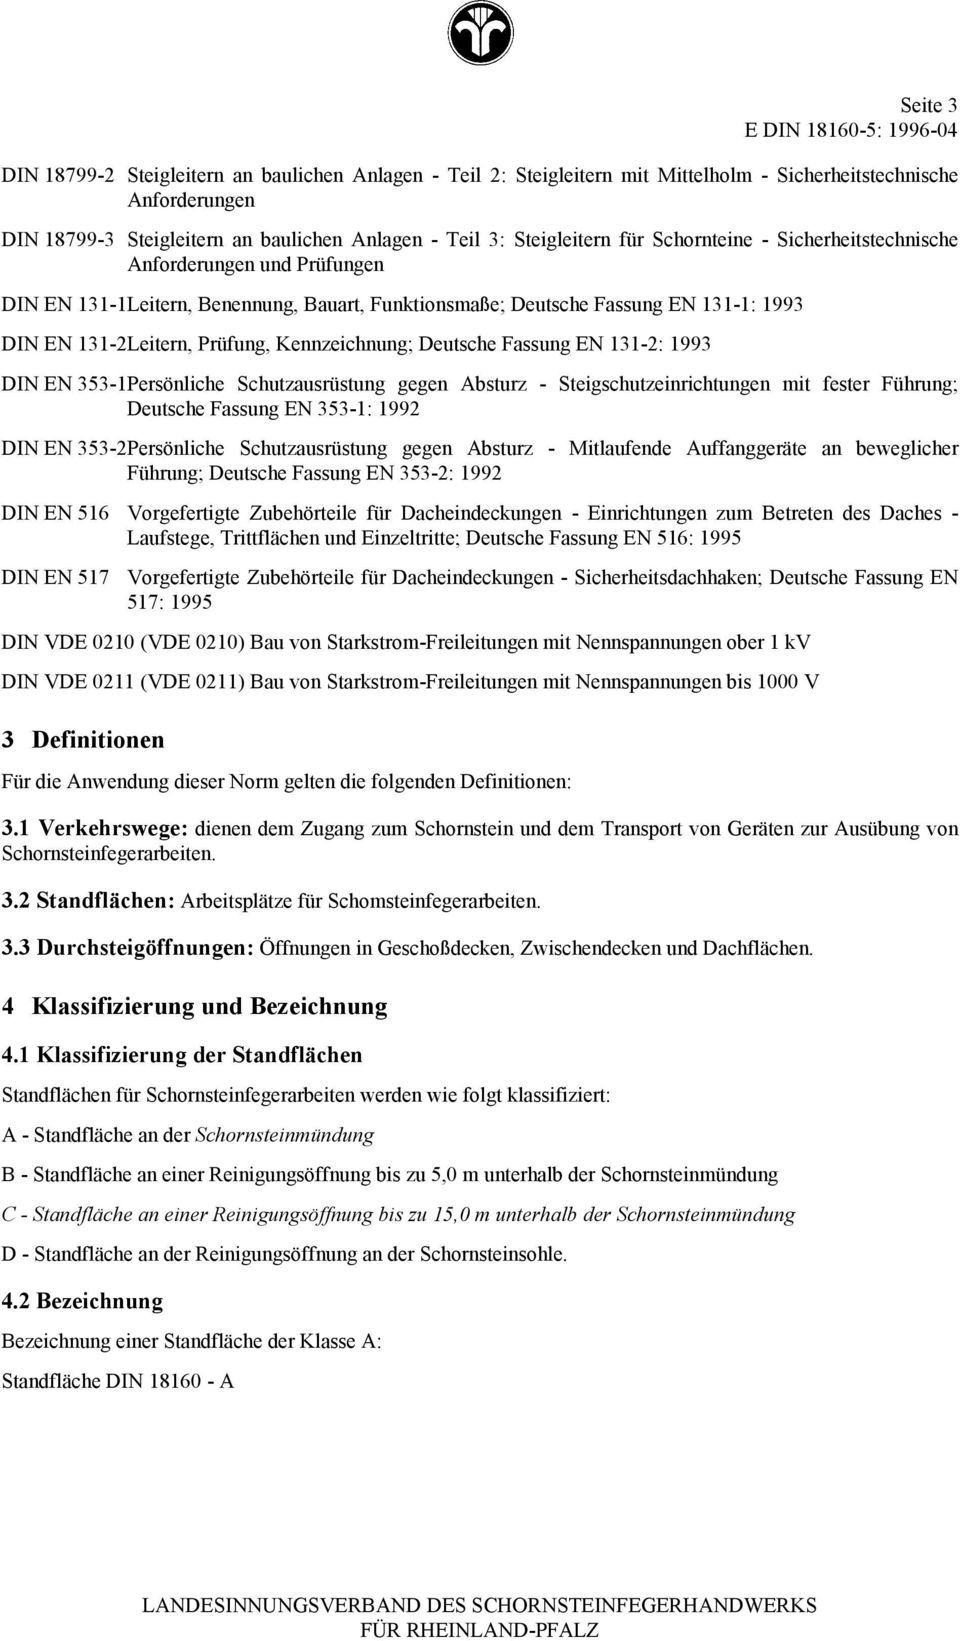 Prüfung, Kennzeichnung; Deutsche Fassung EN 11-2: 199 DIN EN 5-1Persönliche Schutzausrüstung gegen Absturz - Steigschutzeinrichtungen mit fester Führung; Deutsche Fassung EN 5-1: 1992 DIN EN